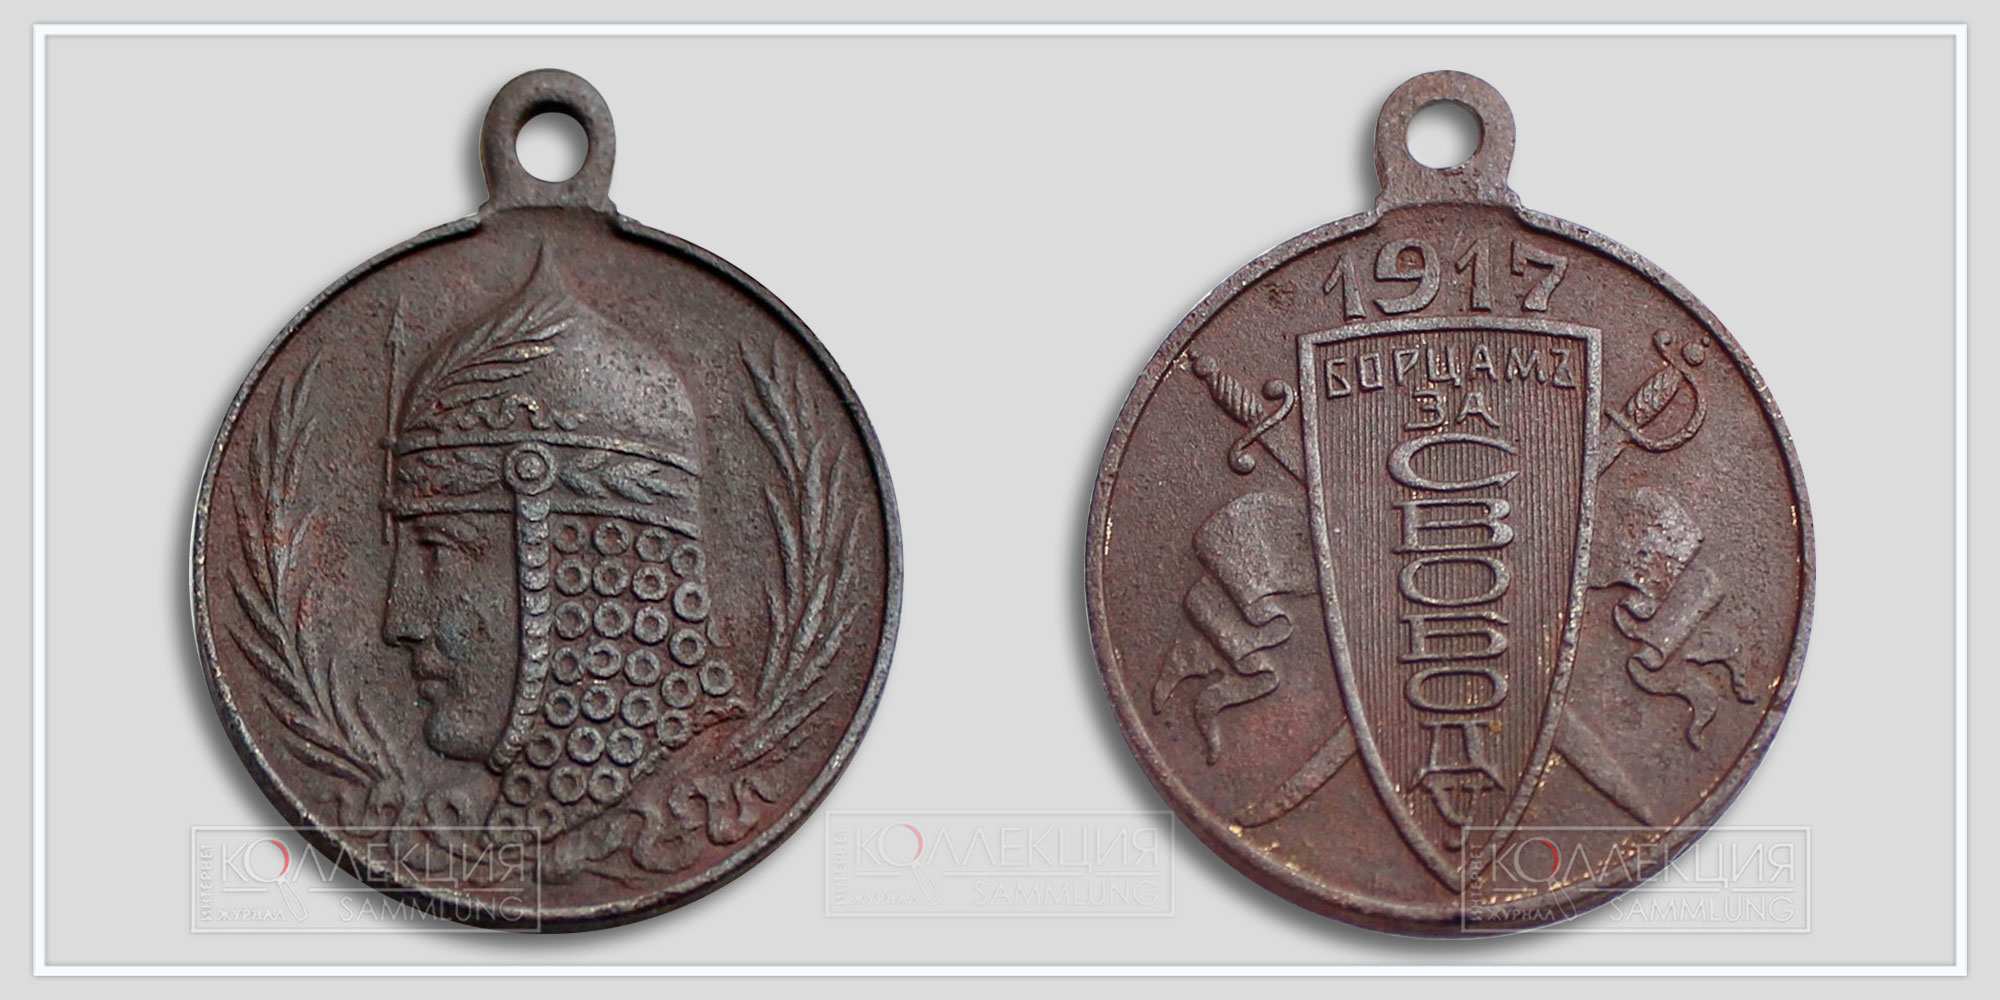 Медаль (жетон) "Борцам за свободу" 1917 Временное правительство